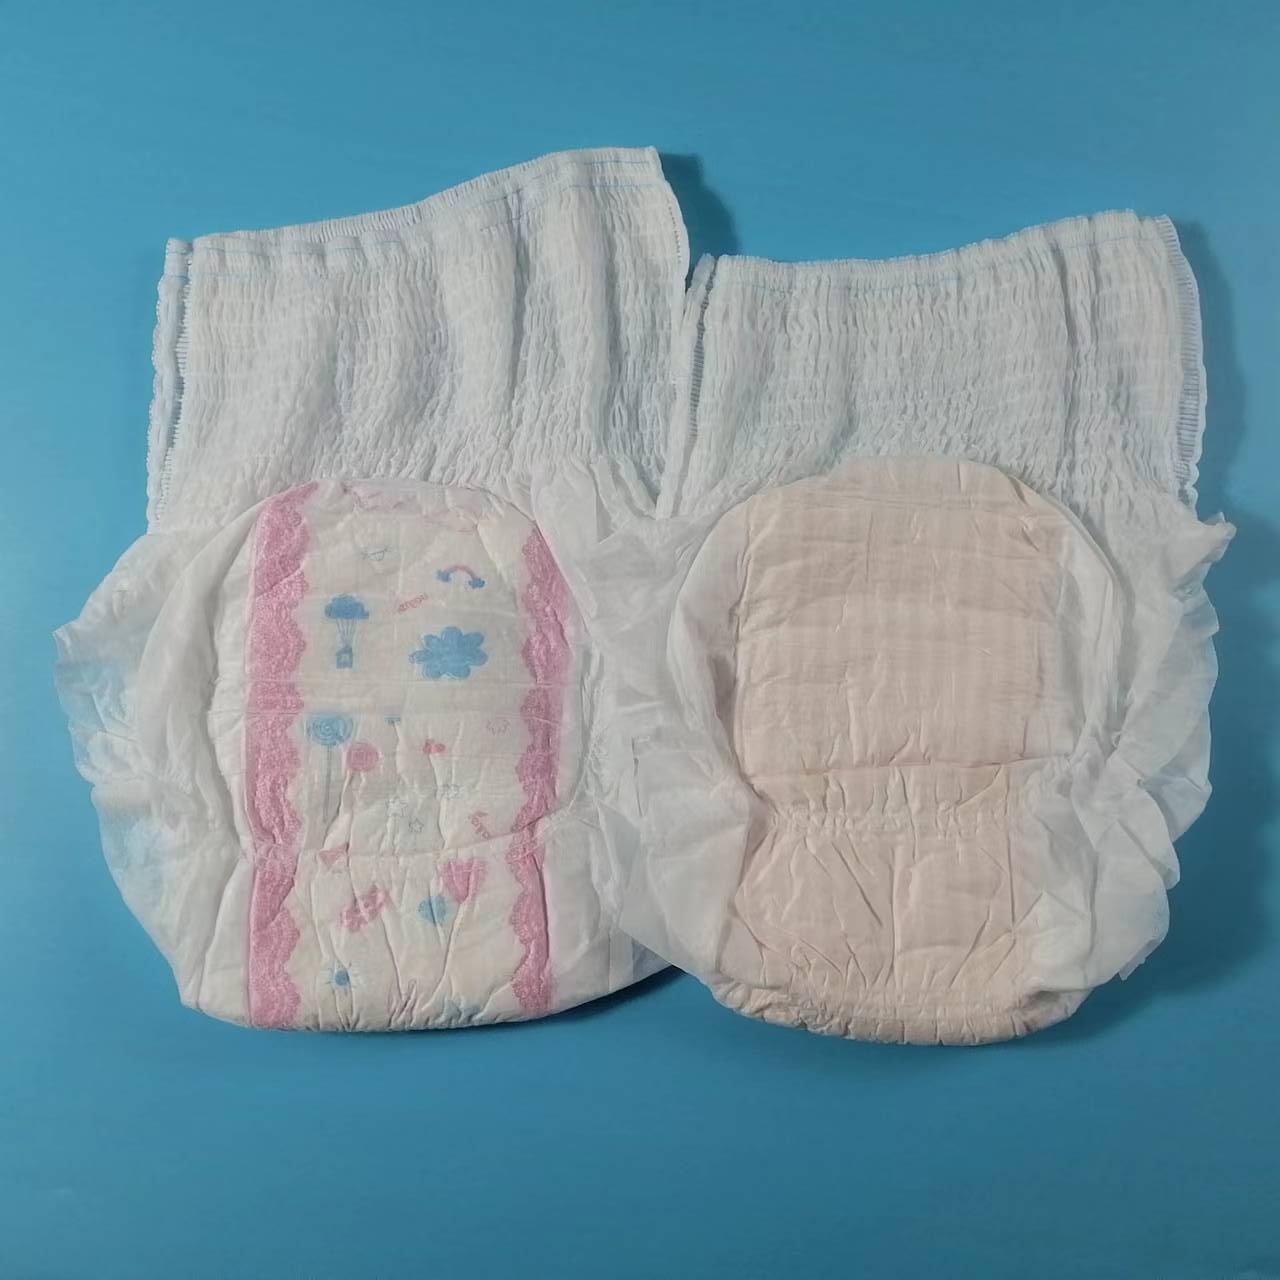 Pantalones menstruales desechables de la mejor calidad, precio bajo, tipo panty con superficie suave y saludable